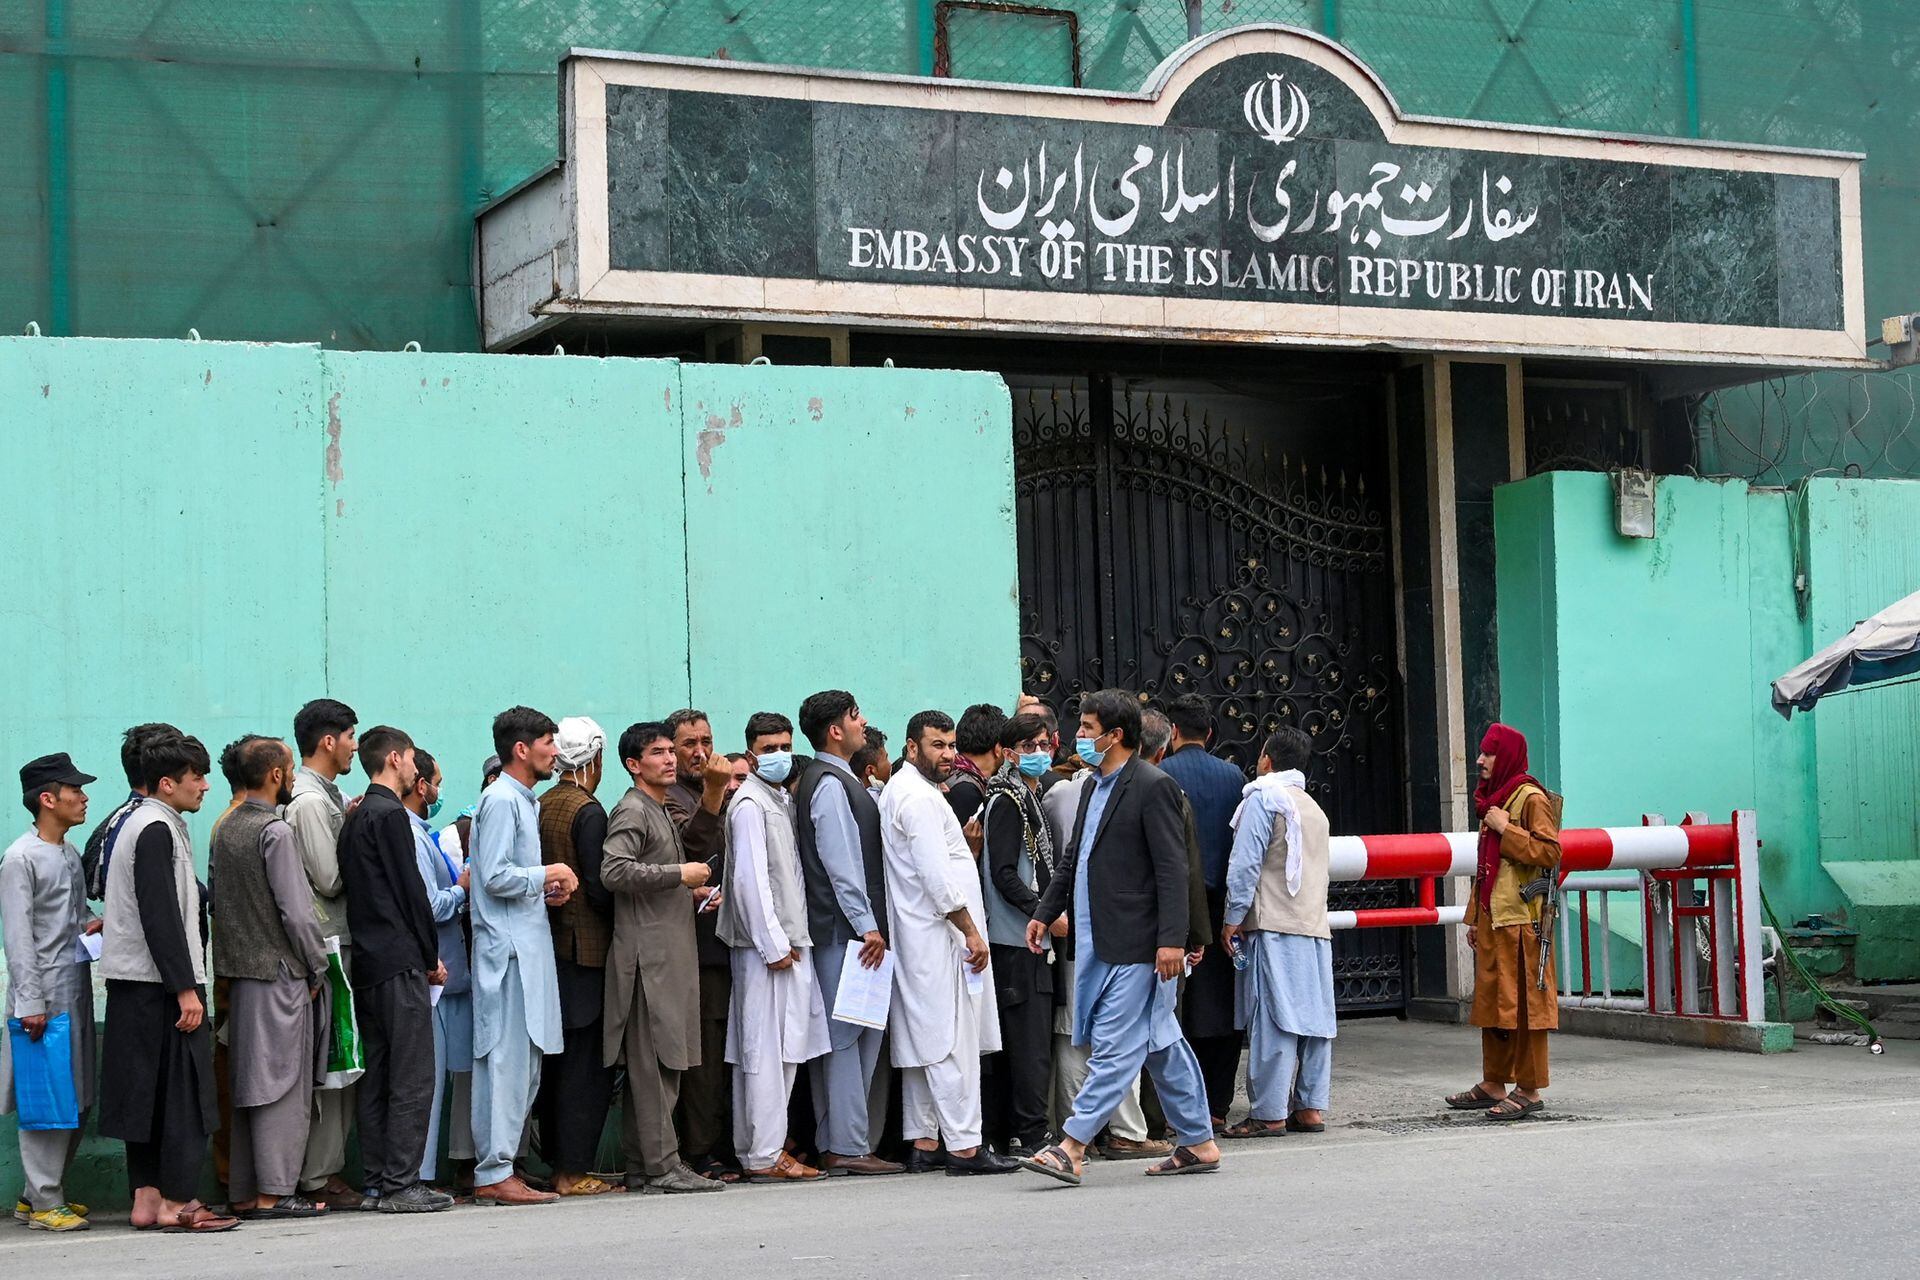 Los afganos hacen fila frente a la embajada iraní para obtener una visa en Kabul y poder abandonar el país lo antes posible